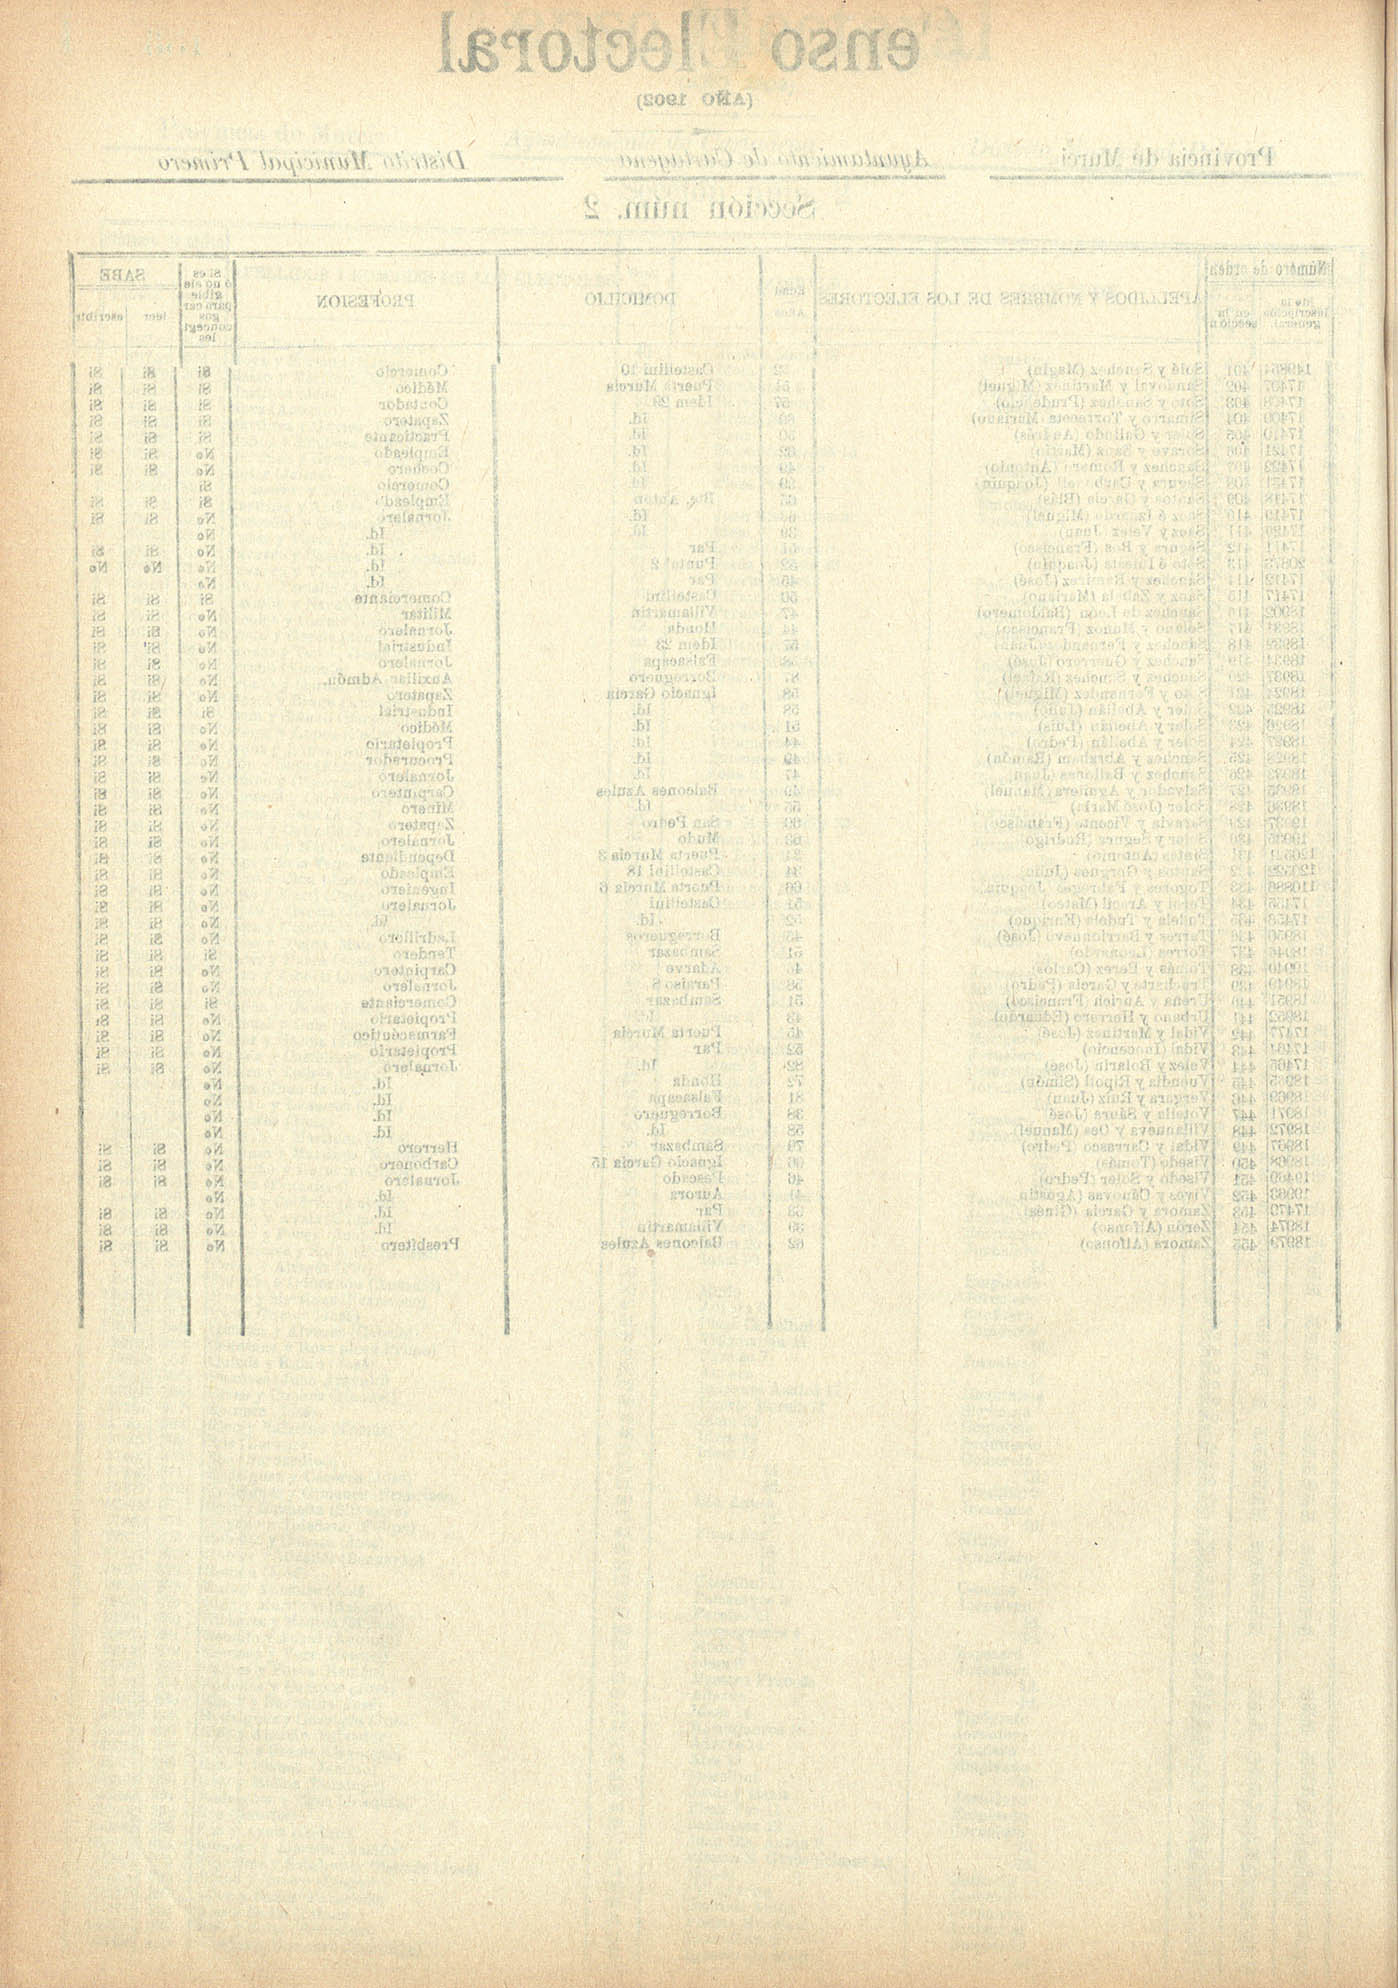 Censo electoral provincial de 1902